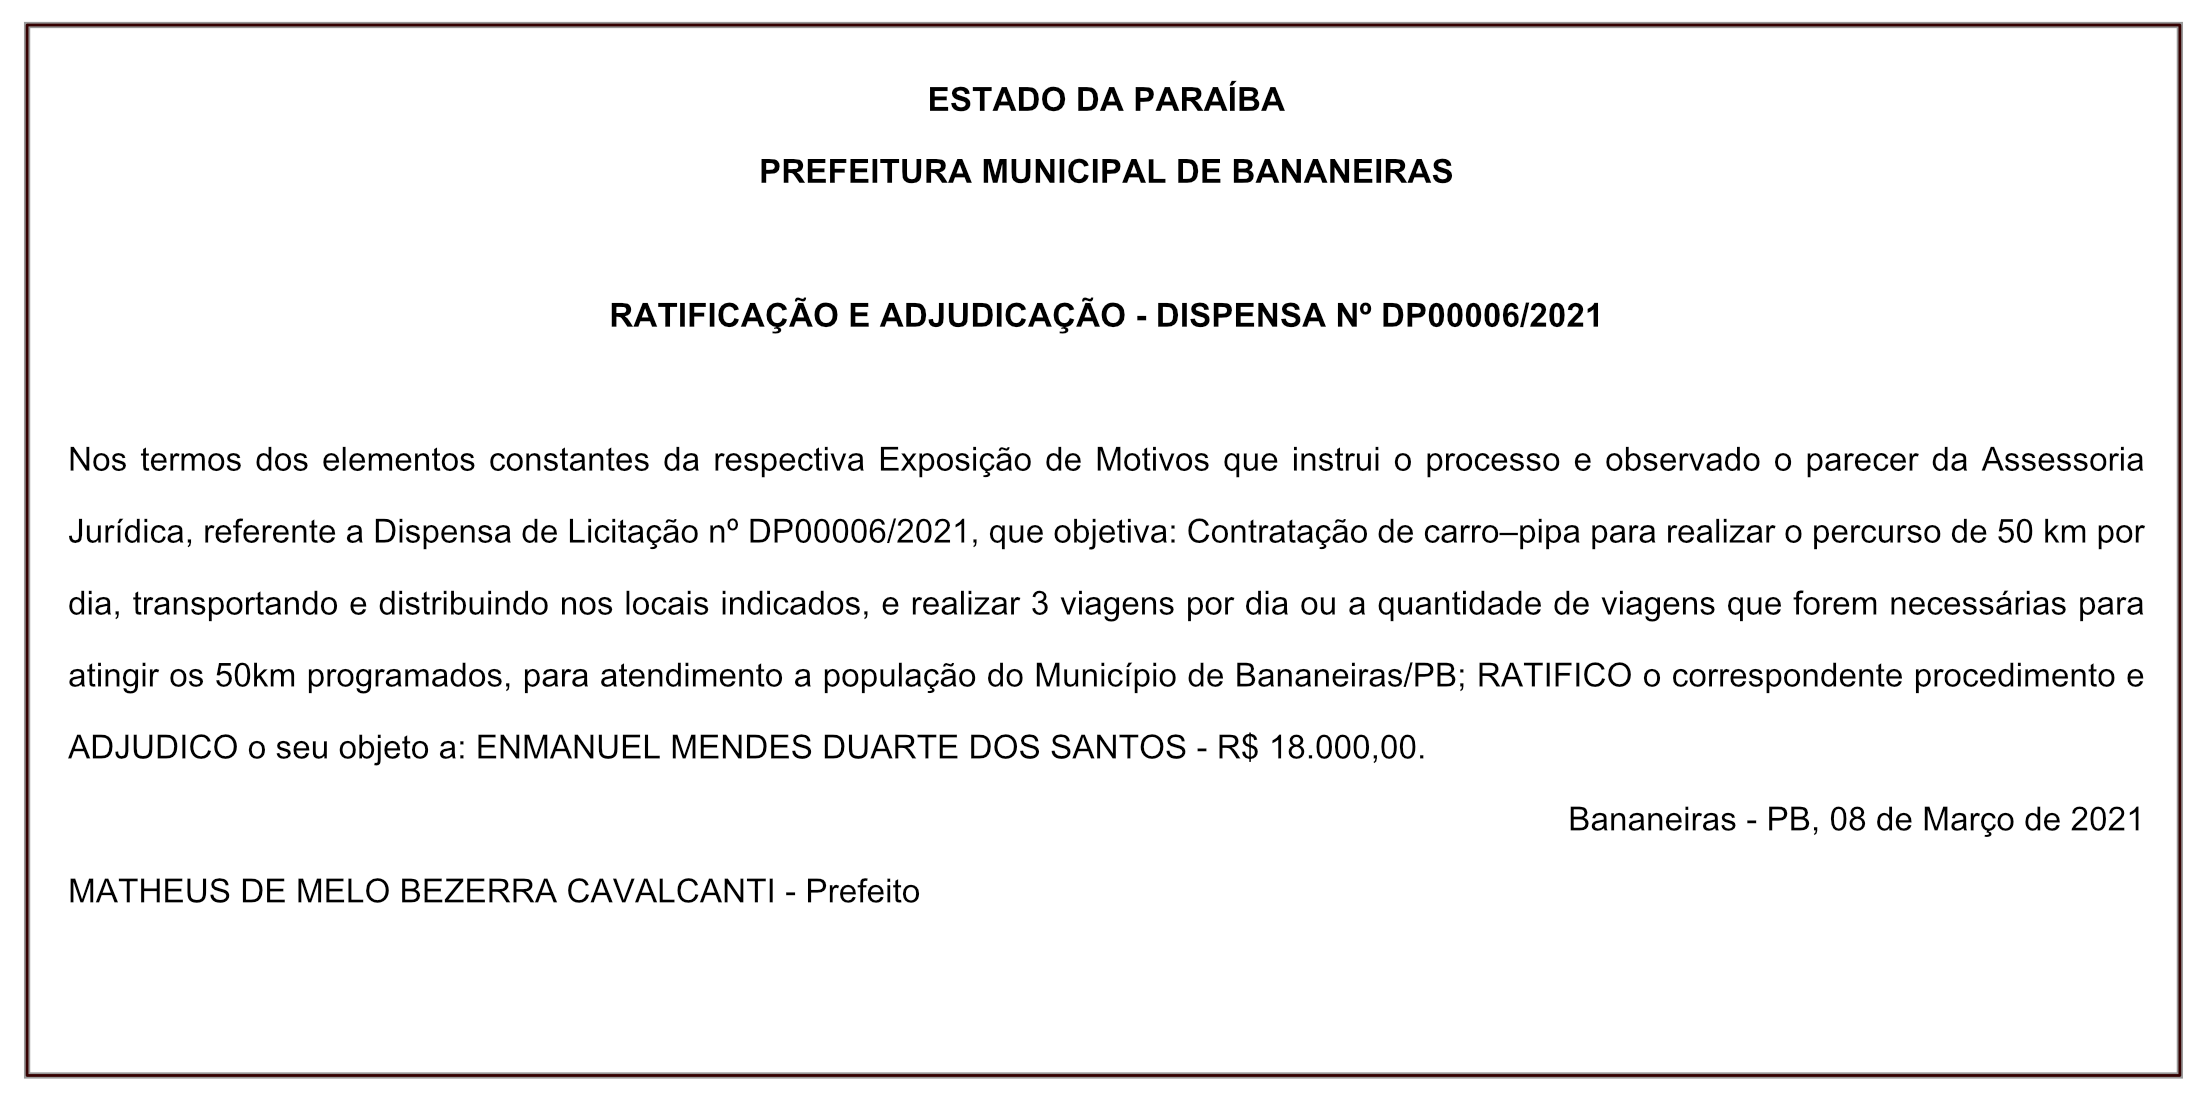 PREFEITURA MUNICIPAL DE BANANEIRAS – RATIFICAÇÃO E ADJUDICAÇÃO – DISPENSA Nº DP00006/2021